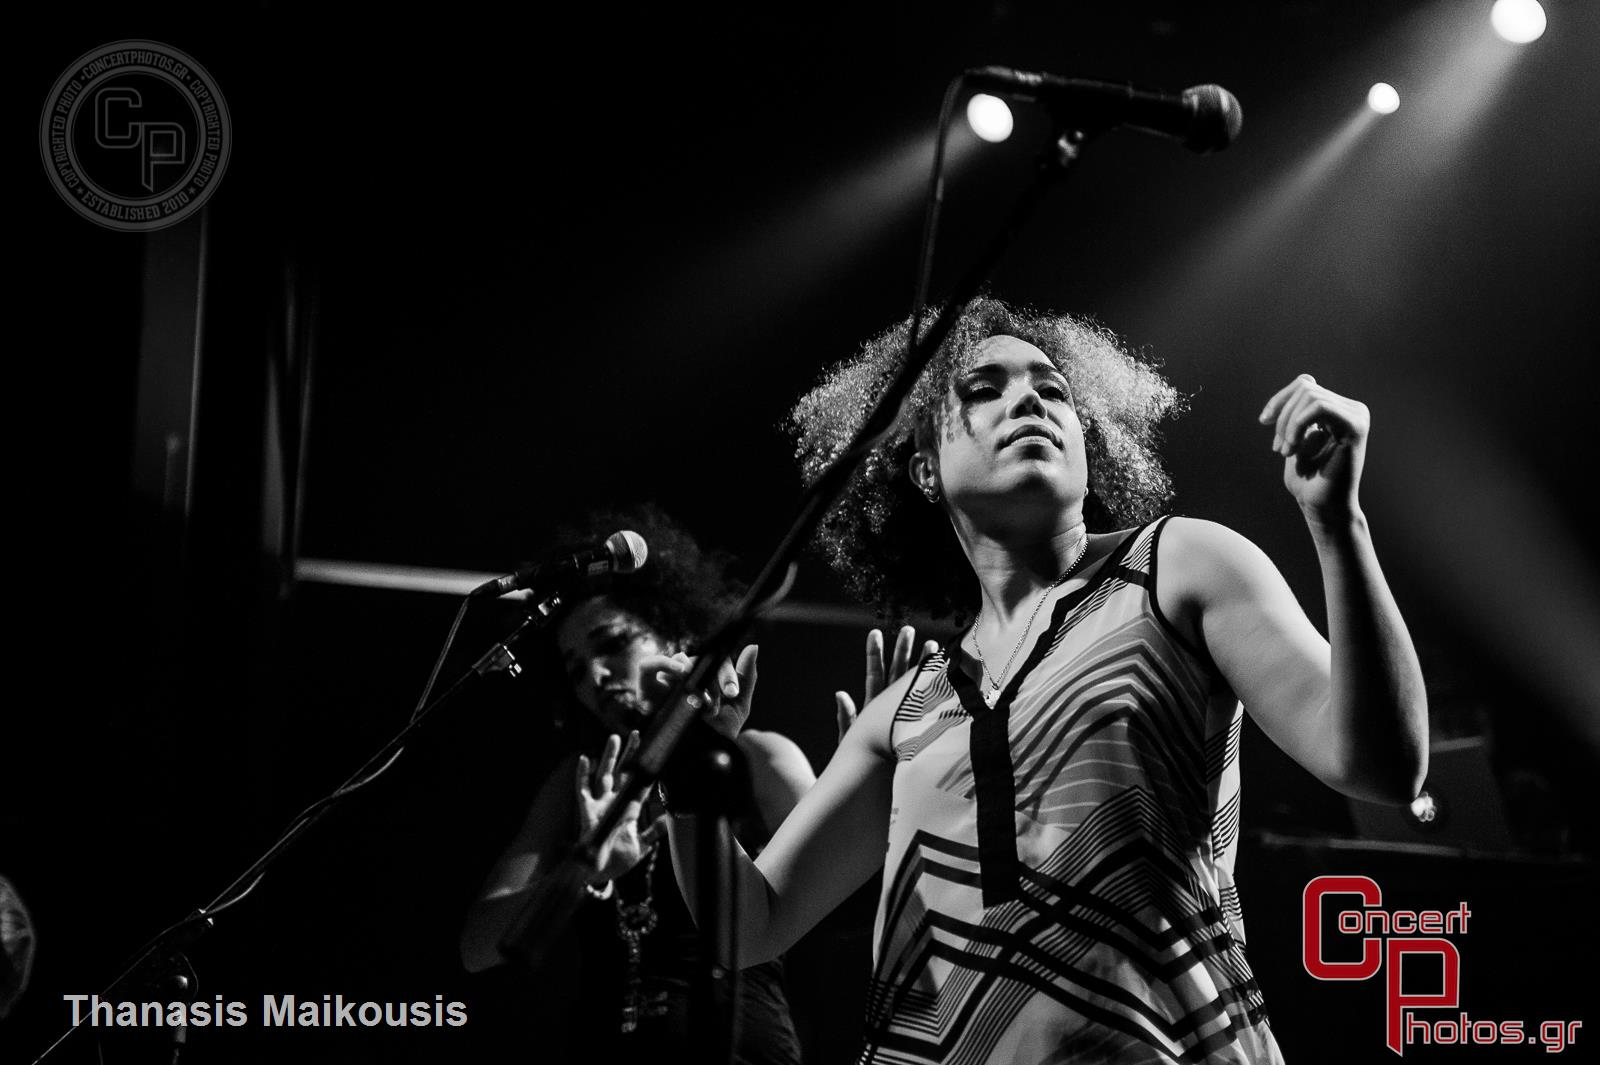 Stereo Mc's-Stereo Mcs photographer: Thanasis Maikousis - ConcertPhotos - 20141129_2331_37